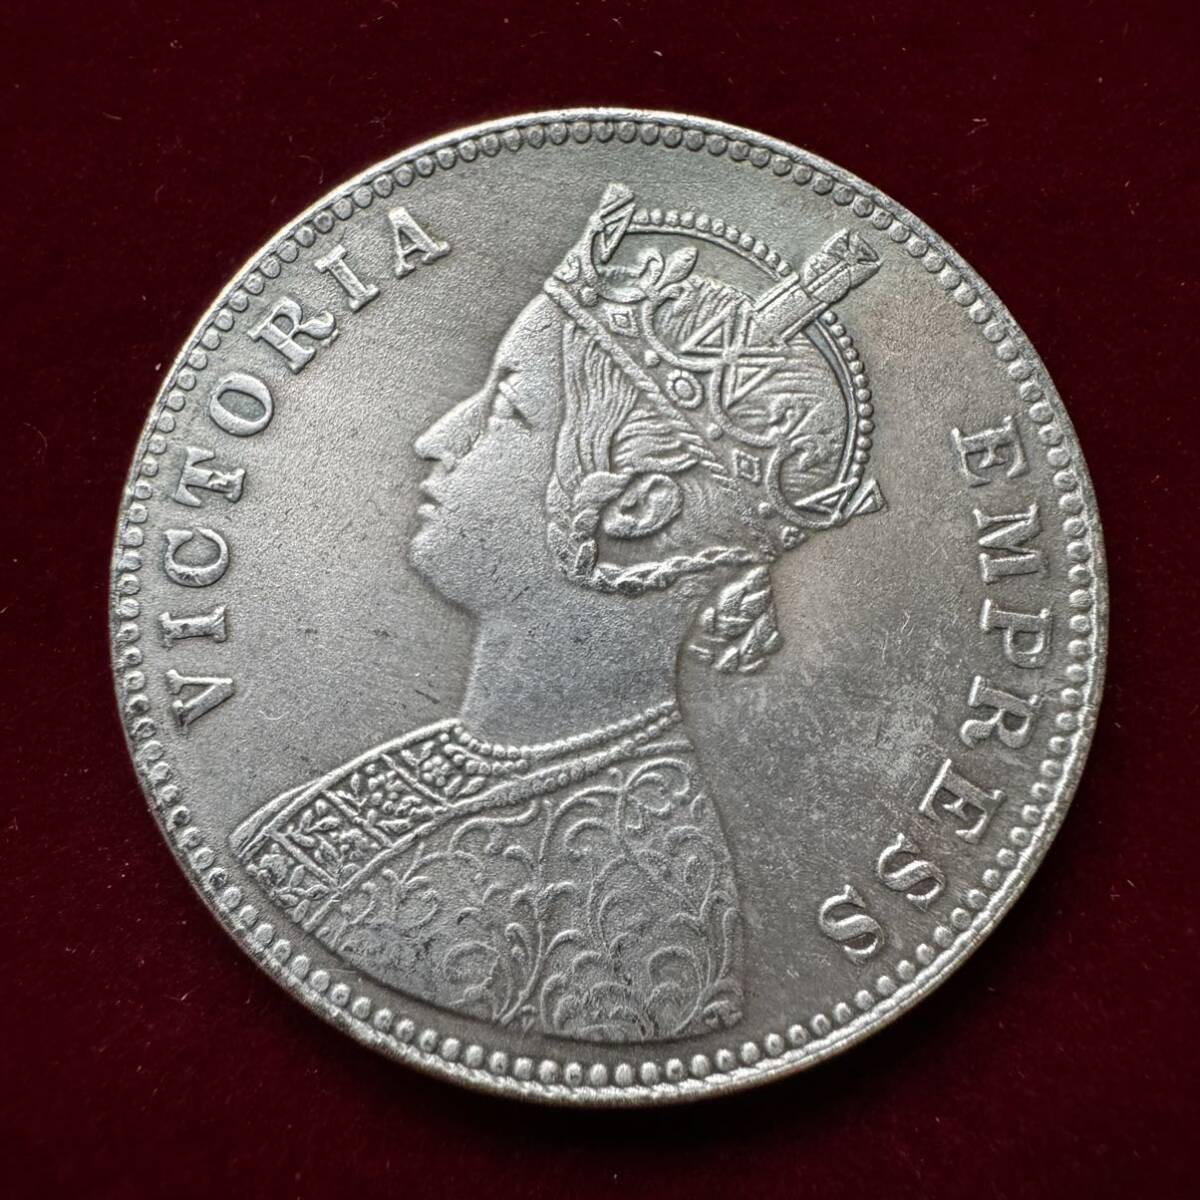 イギリス 硬貨 古銭 ヴィクトリア女王 1886年 イギリス領インド 初代インド皇帝 1ルピー コイン 銀貨 外国古銭 海外硬貨_画像1